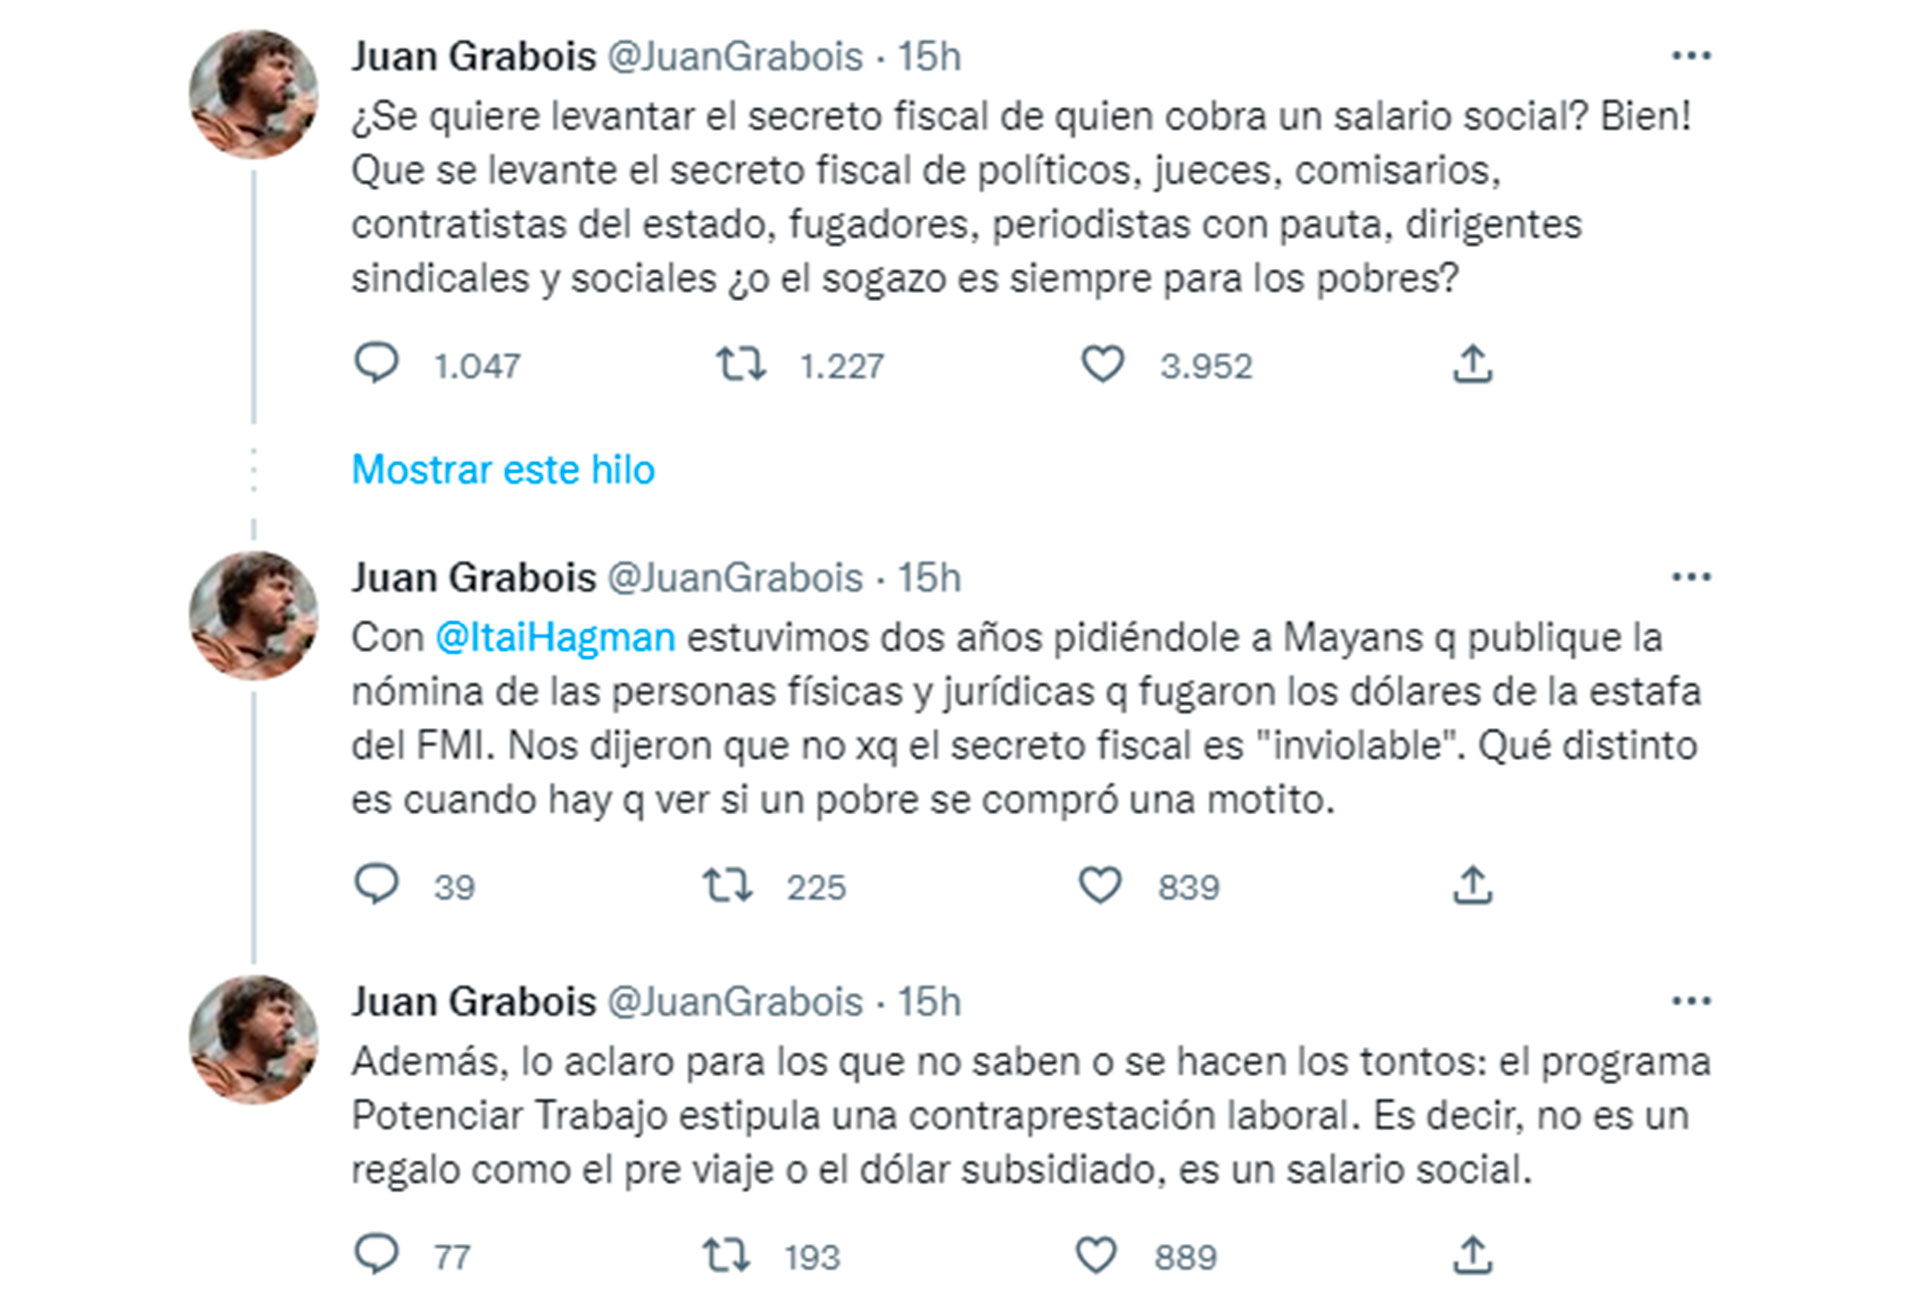 Los mensajes de Juan Grabois que critican al Gobierno, tras el pedido de levantamiento del secreto fiscal entre los beneficios de planes sociales